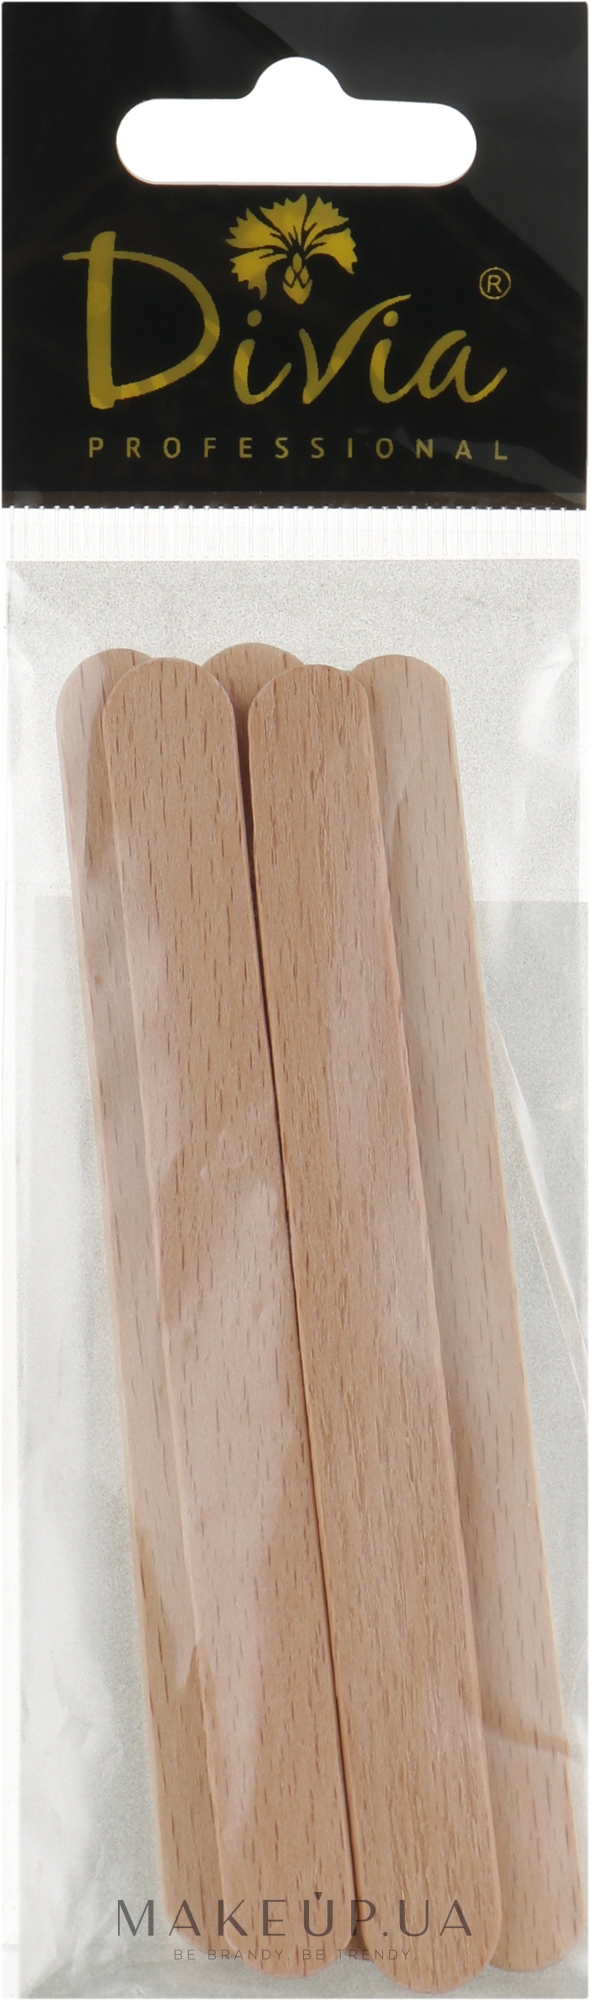 Деревянный шпатель для нанесения воска Di587 92х10 мм, 5 шт - Divia Di587 — фото 5шт